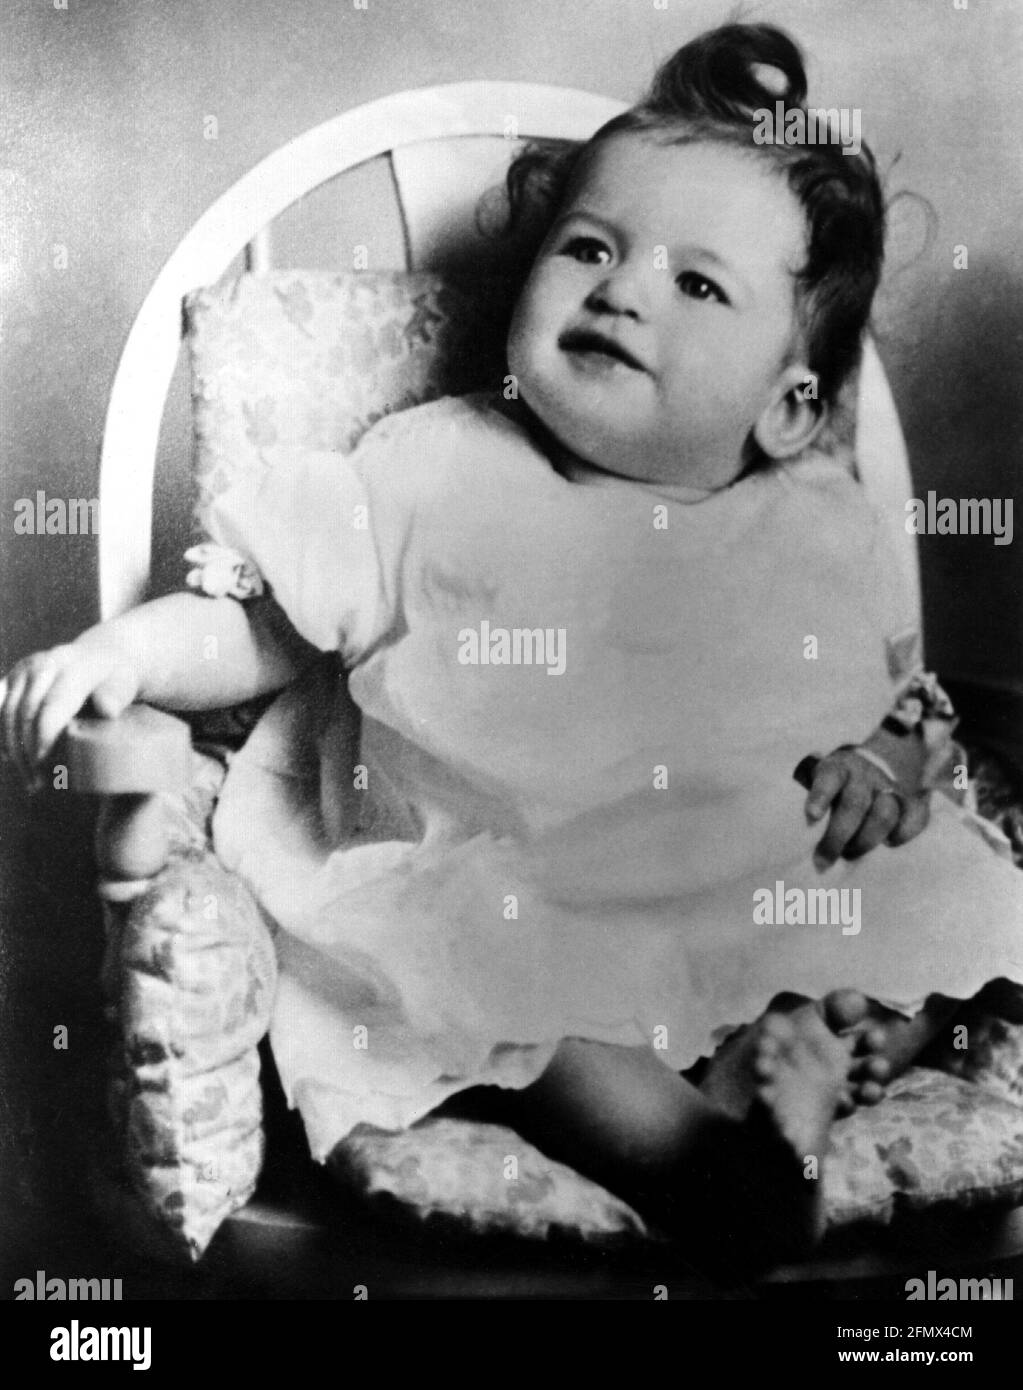 Mansfield, Jayne, 19.4.1934 - 29.7.1967, amerikanische Schauspielerin, als kleines Kind, um 1935, ZUSÄTZLICHE-RIGHTS-CLEARANCE-INFO-NOT-AVAILABLE Stockfoto